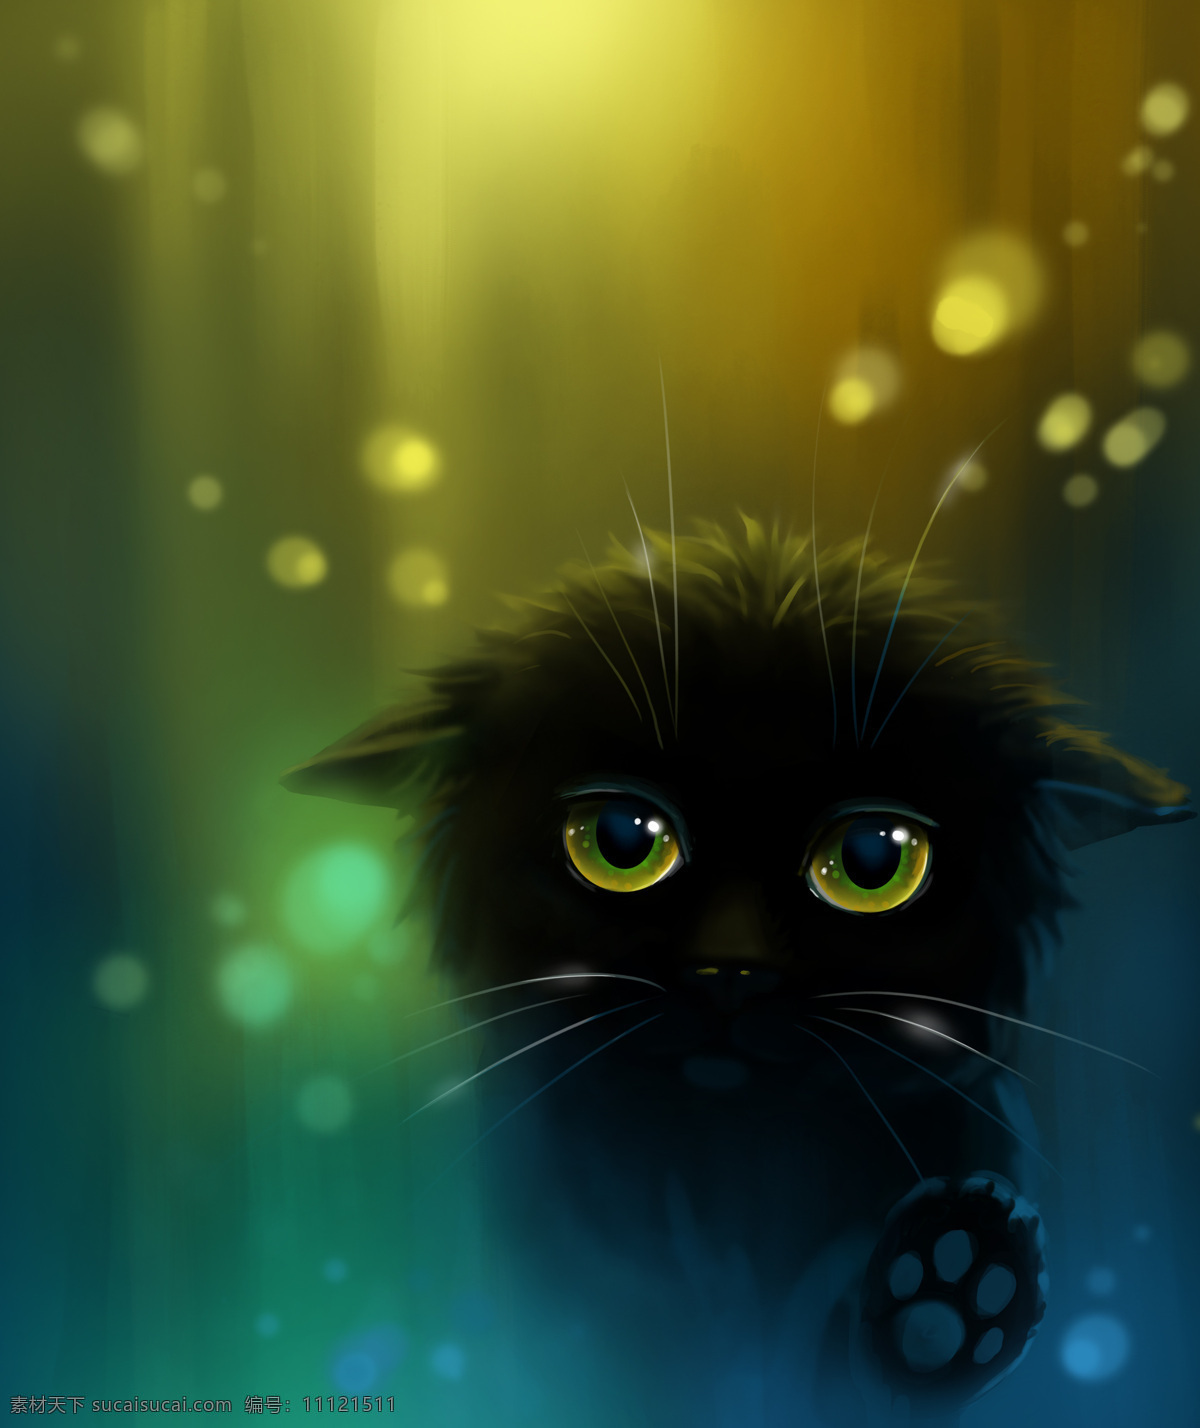 黑色 卡通 小猫 黑色猫 3d动物 立体动物 陆地动物 动物世界 卡通动物 漫画动物 其他类别 生活百科